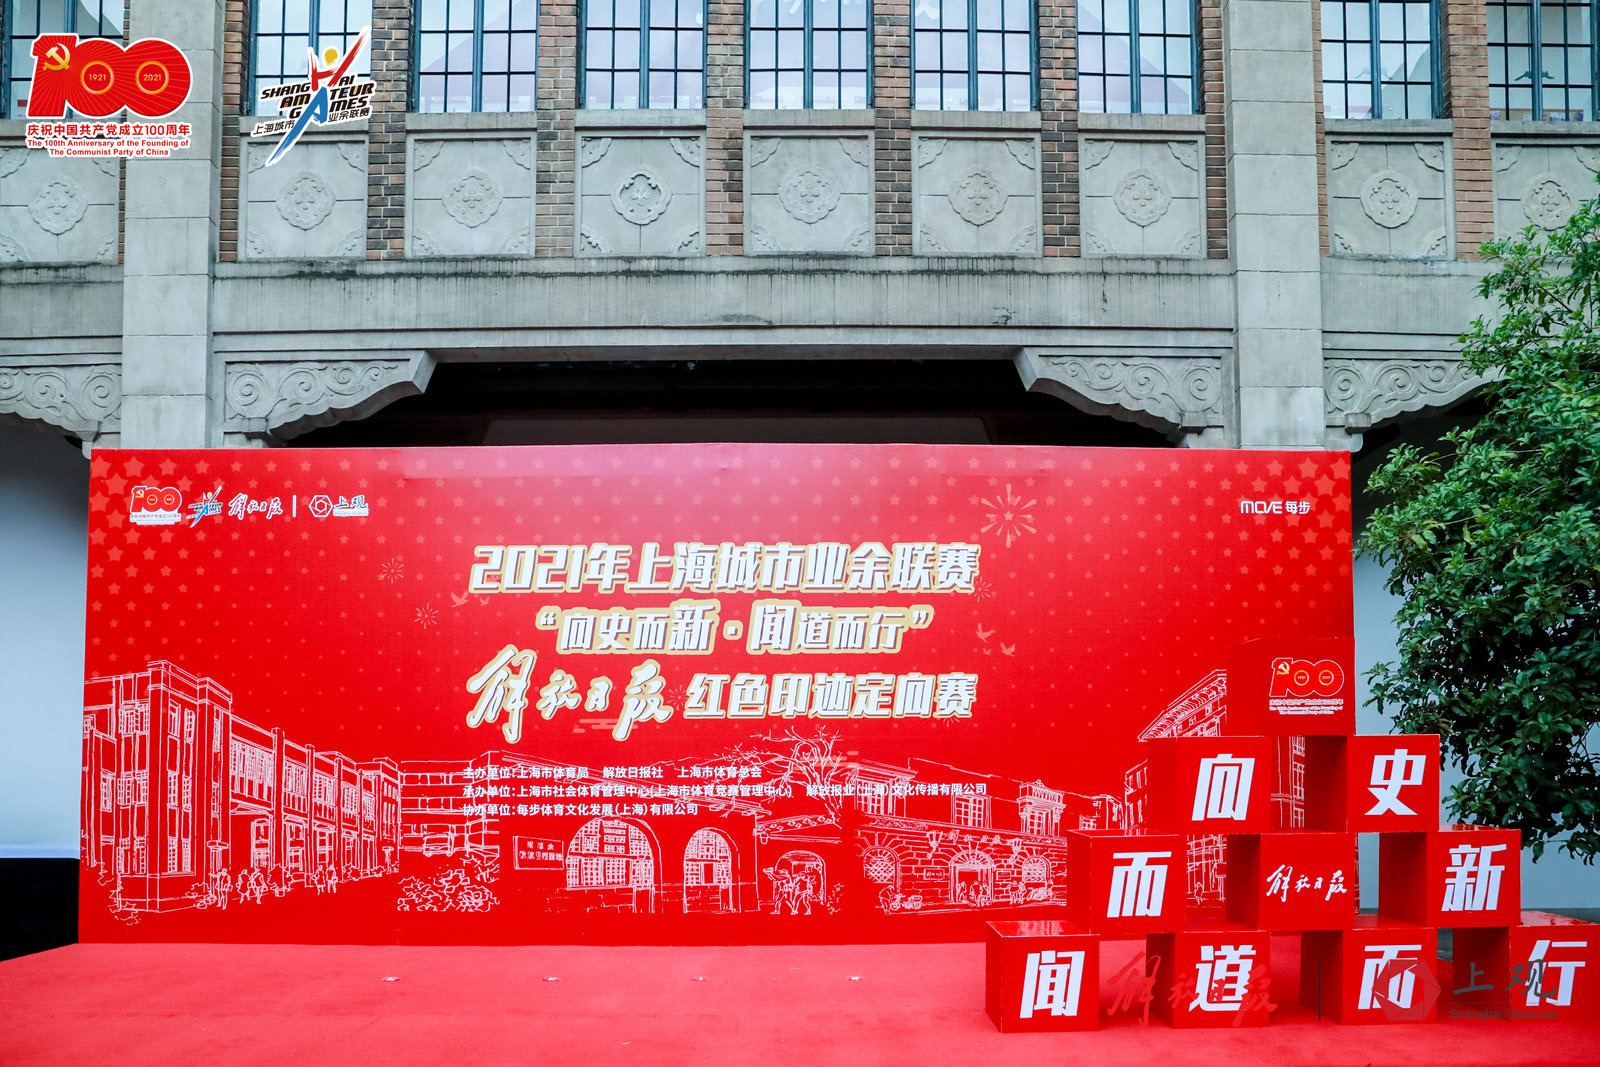 百年·燎原”2021年上海城市业余联赛·建党一百周年健身系列赛“向史而新·闻道而行”解放日报红色印迹定向赛